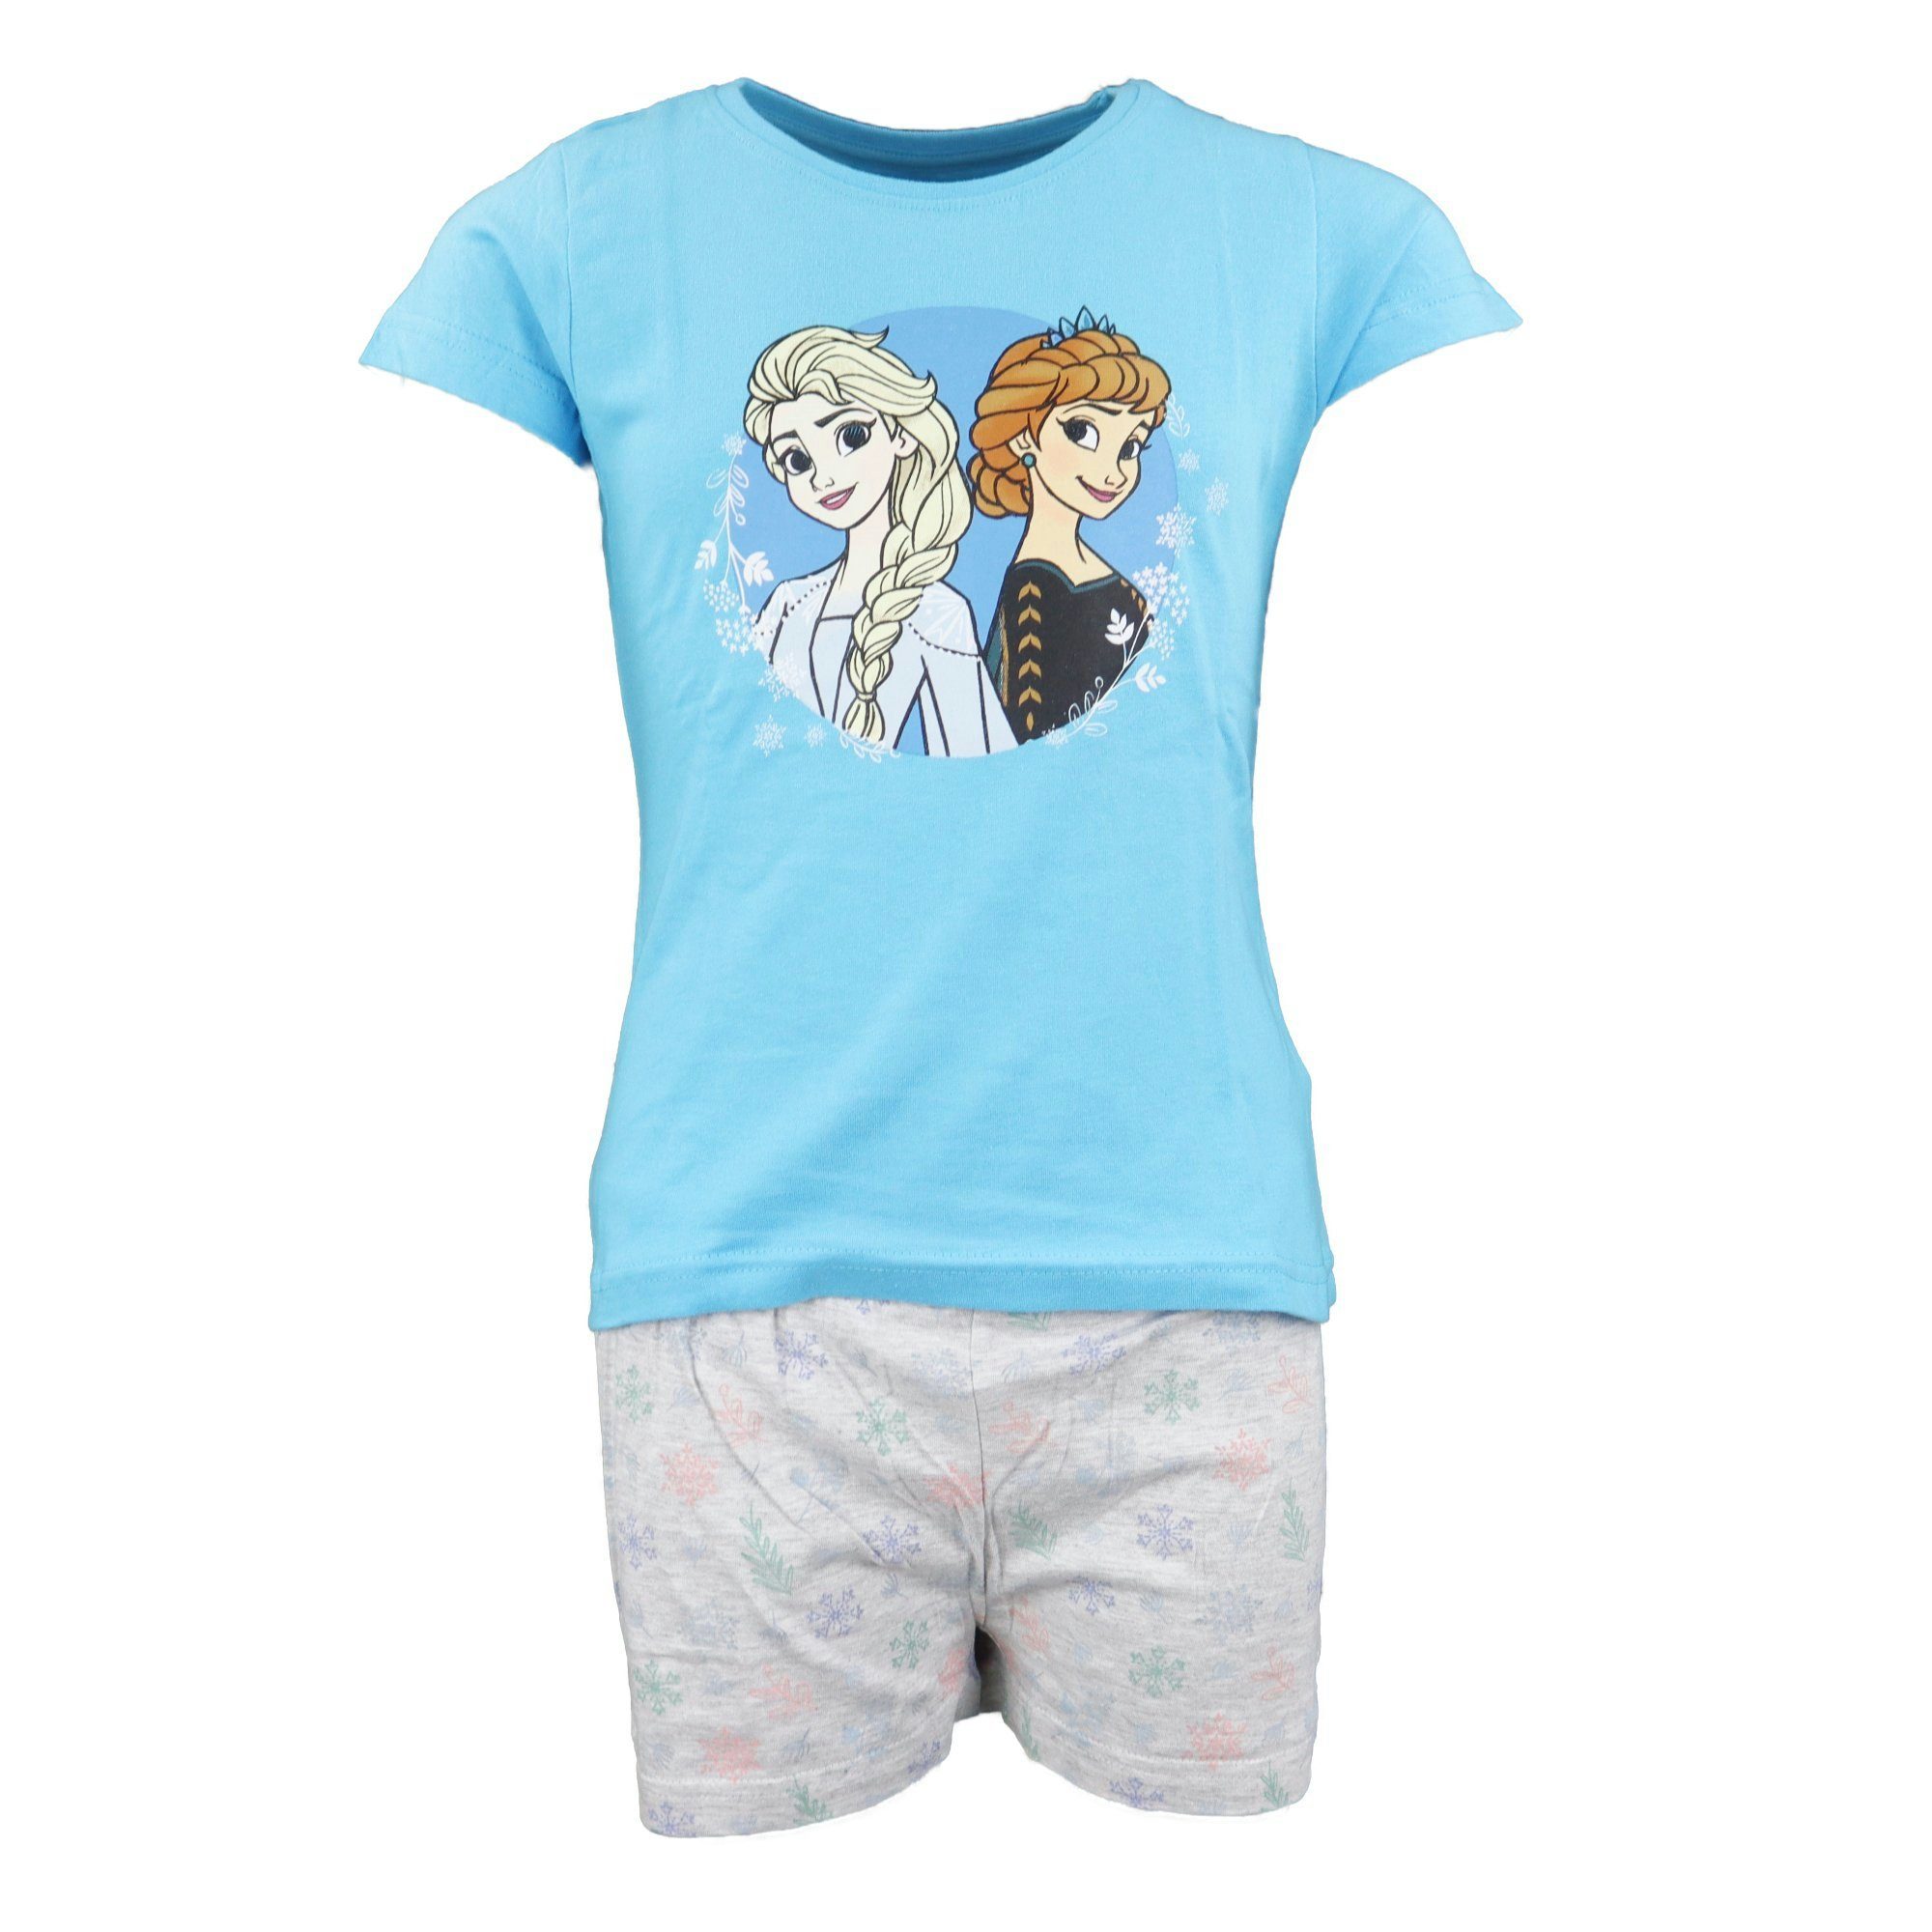 Disney Frozen Schlafanzug Die Eiskönigin Elsa und Anna Mädchen Kinder Pyjama Gr. 104 bis 134, Baumwolle